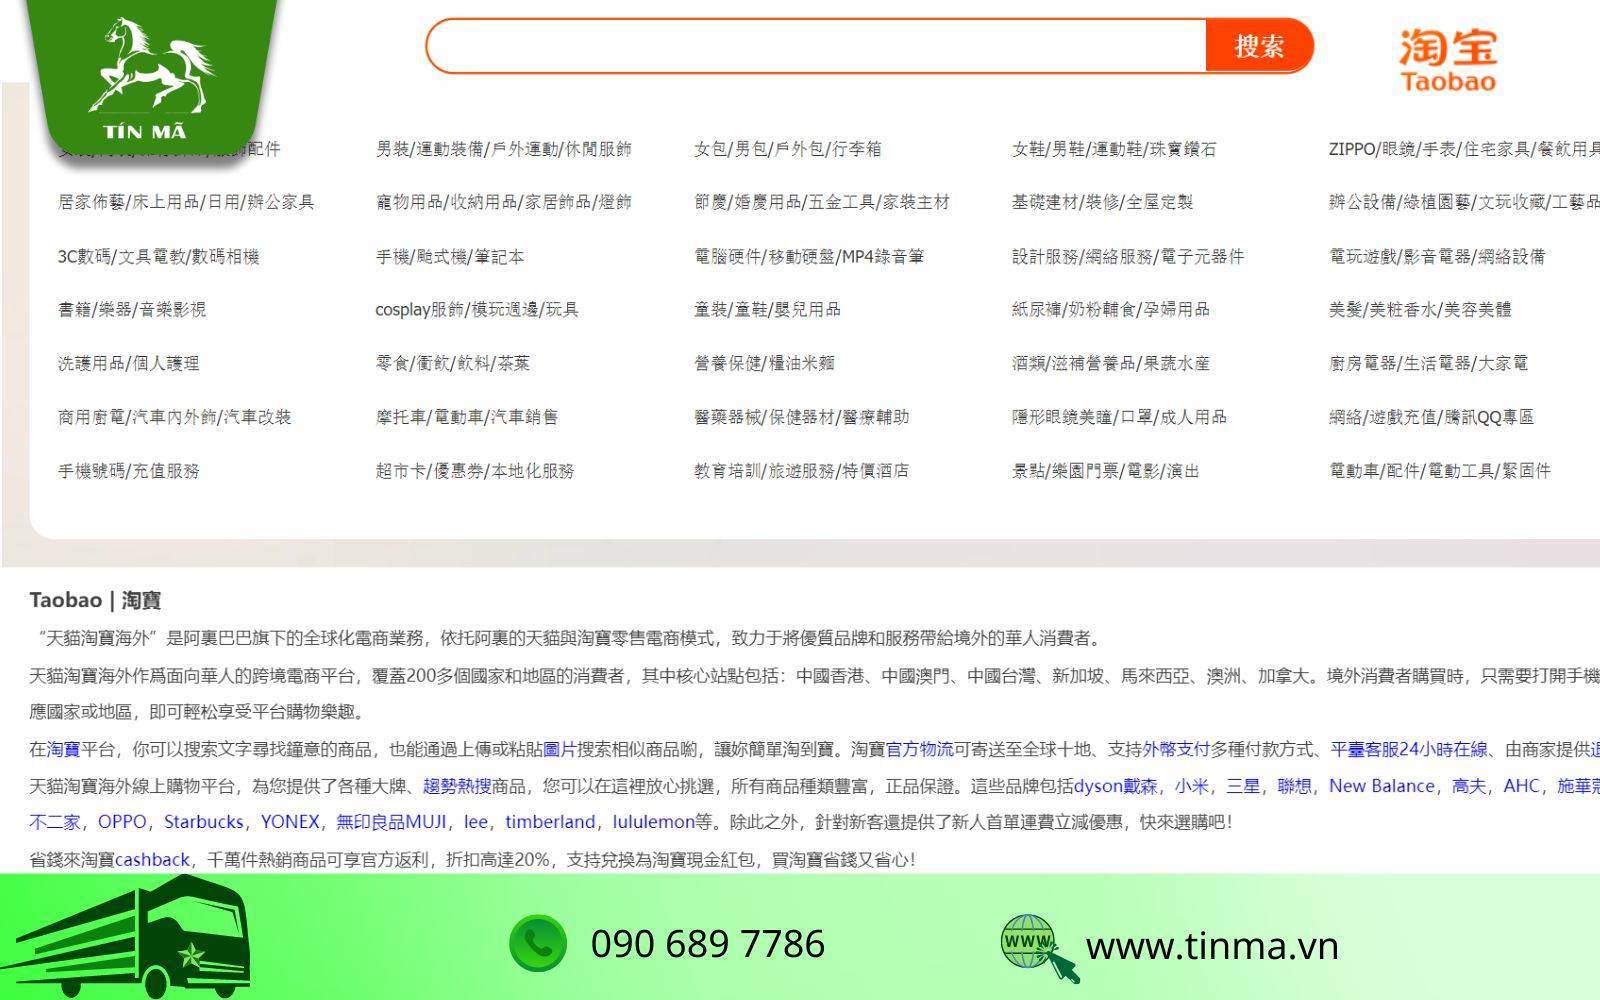 Thiết kế website khó sử dụng gây nhiều trở ngại khi nhập hàng trên Taobao.com